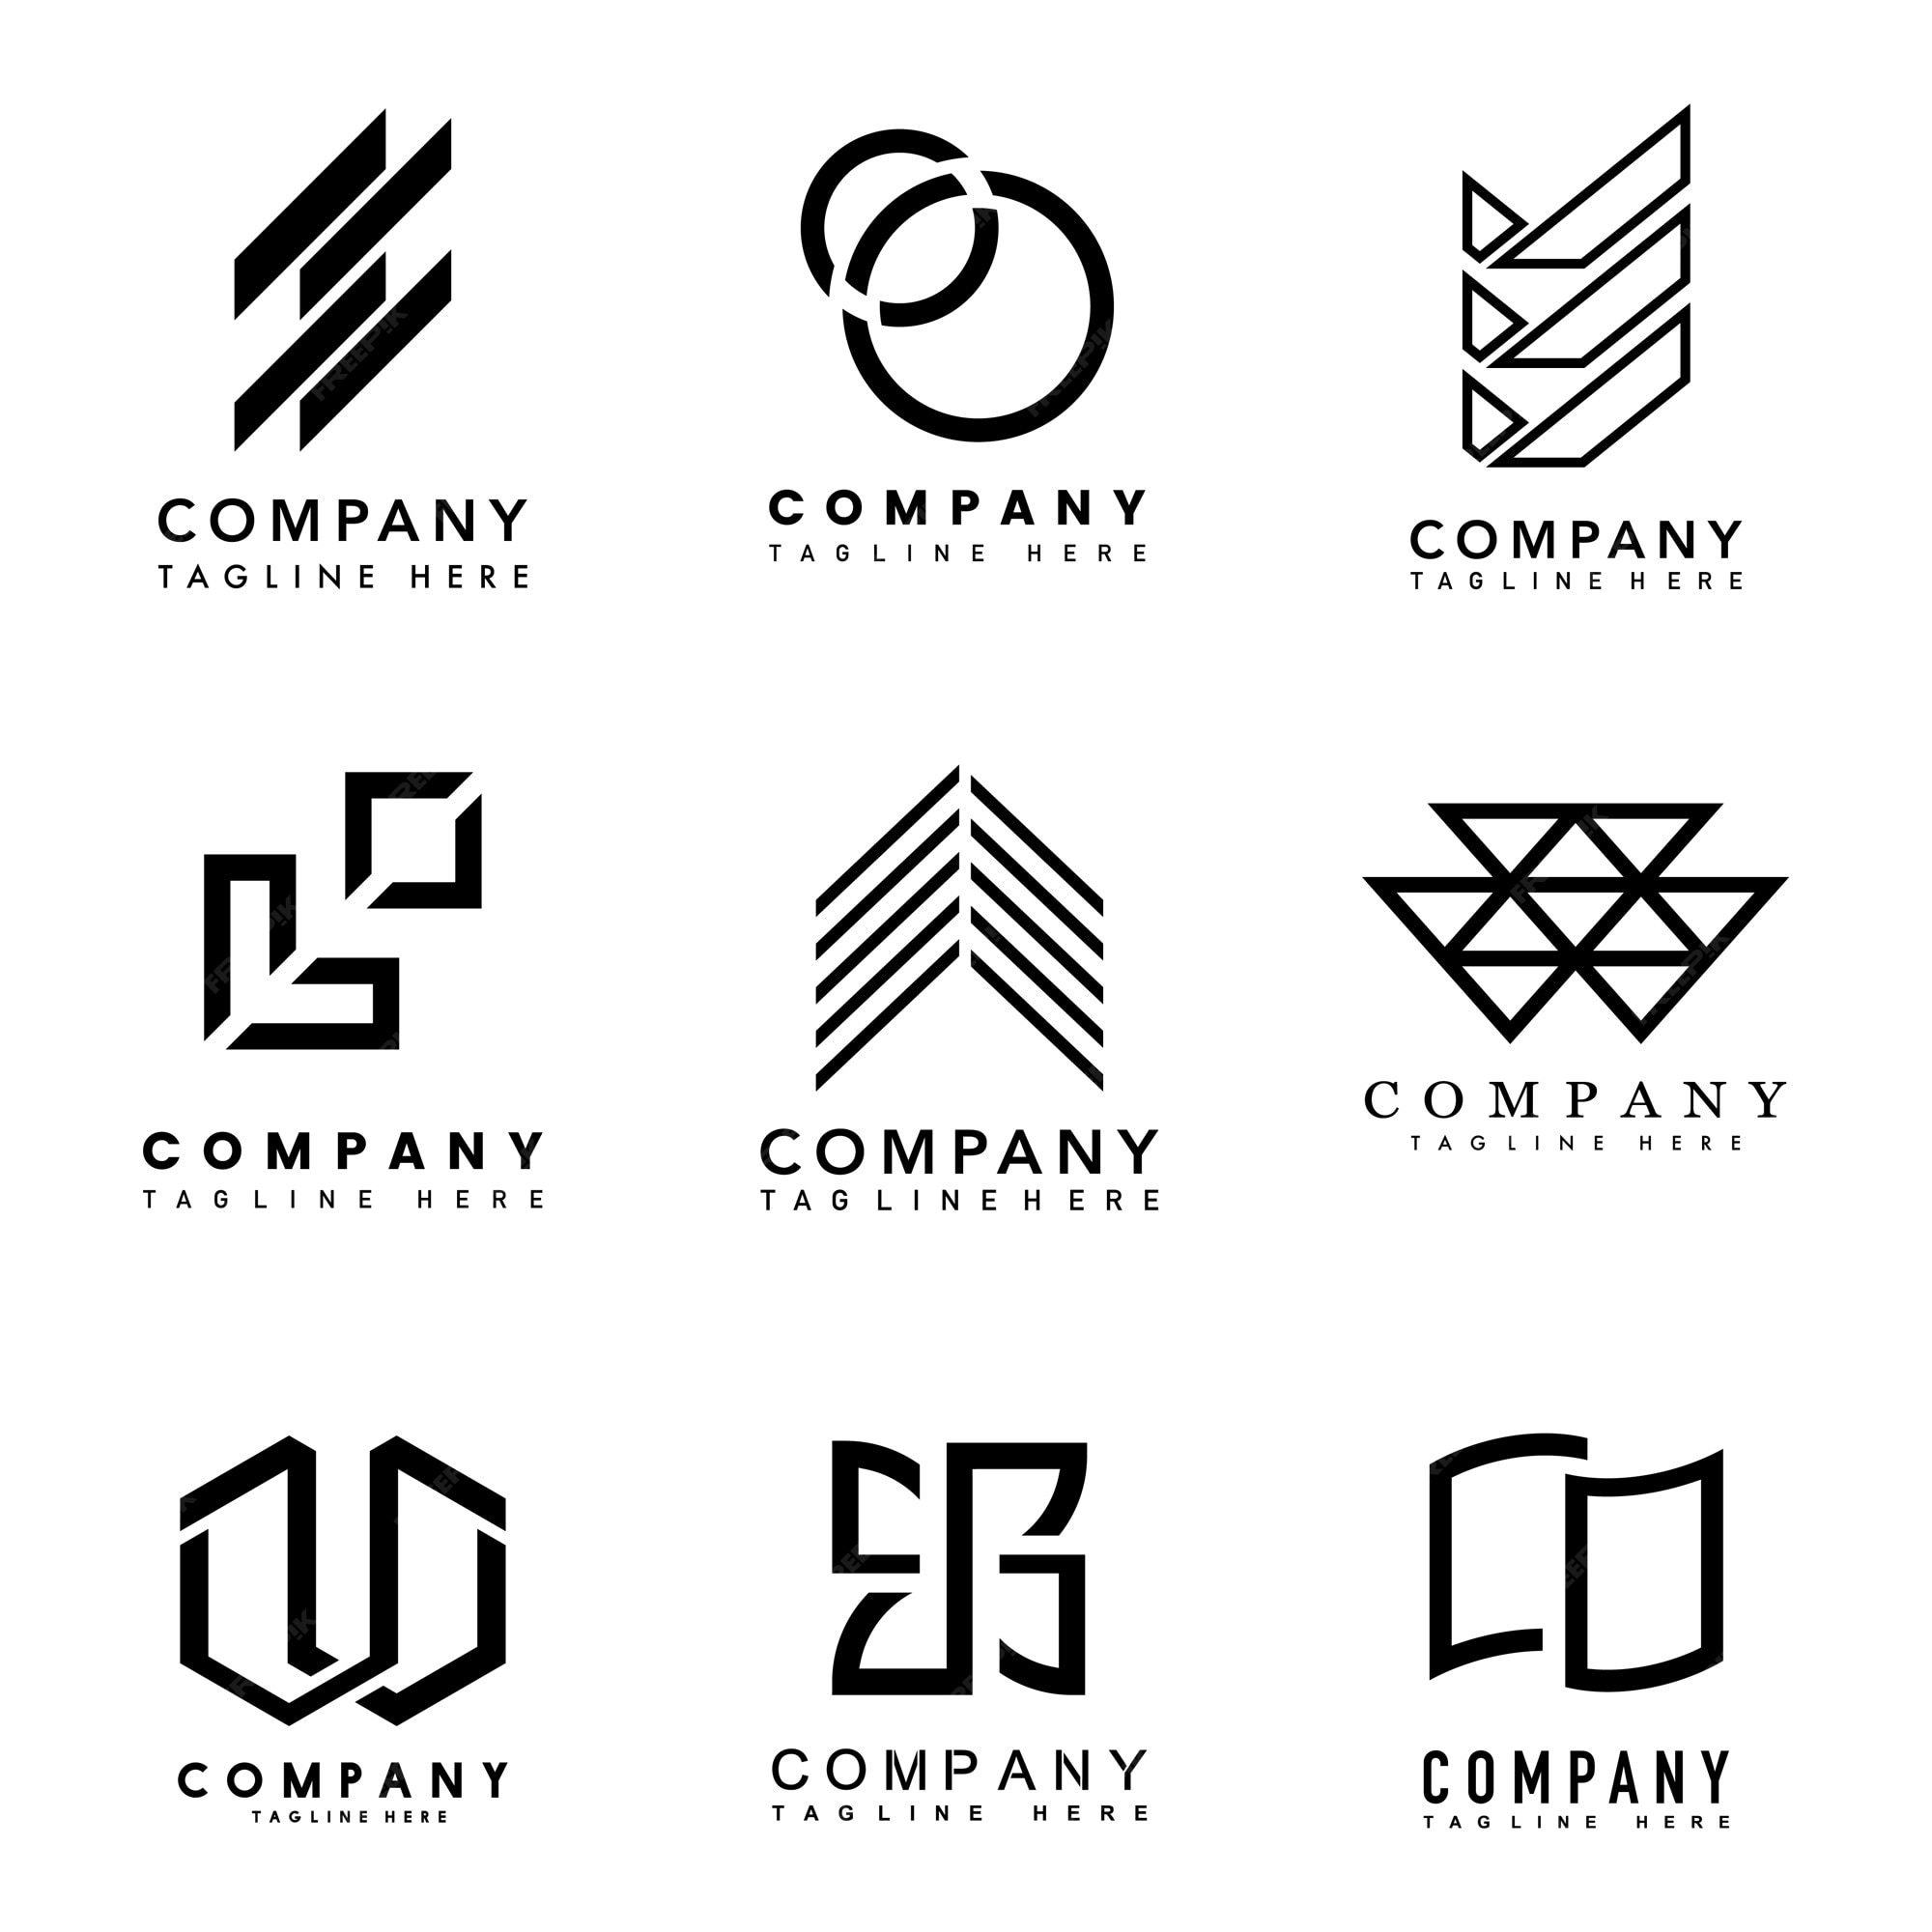 Free Vector | Set of company logo design ideas vector